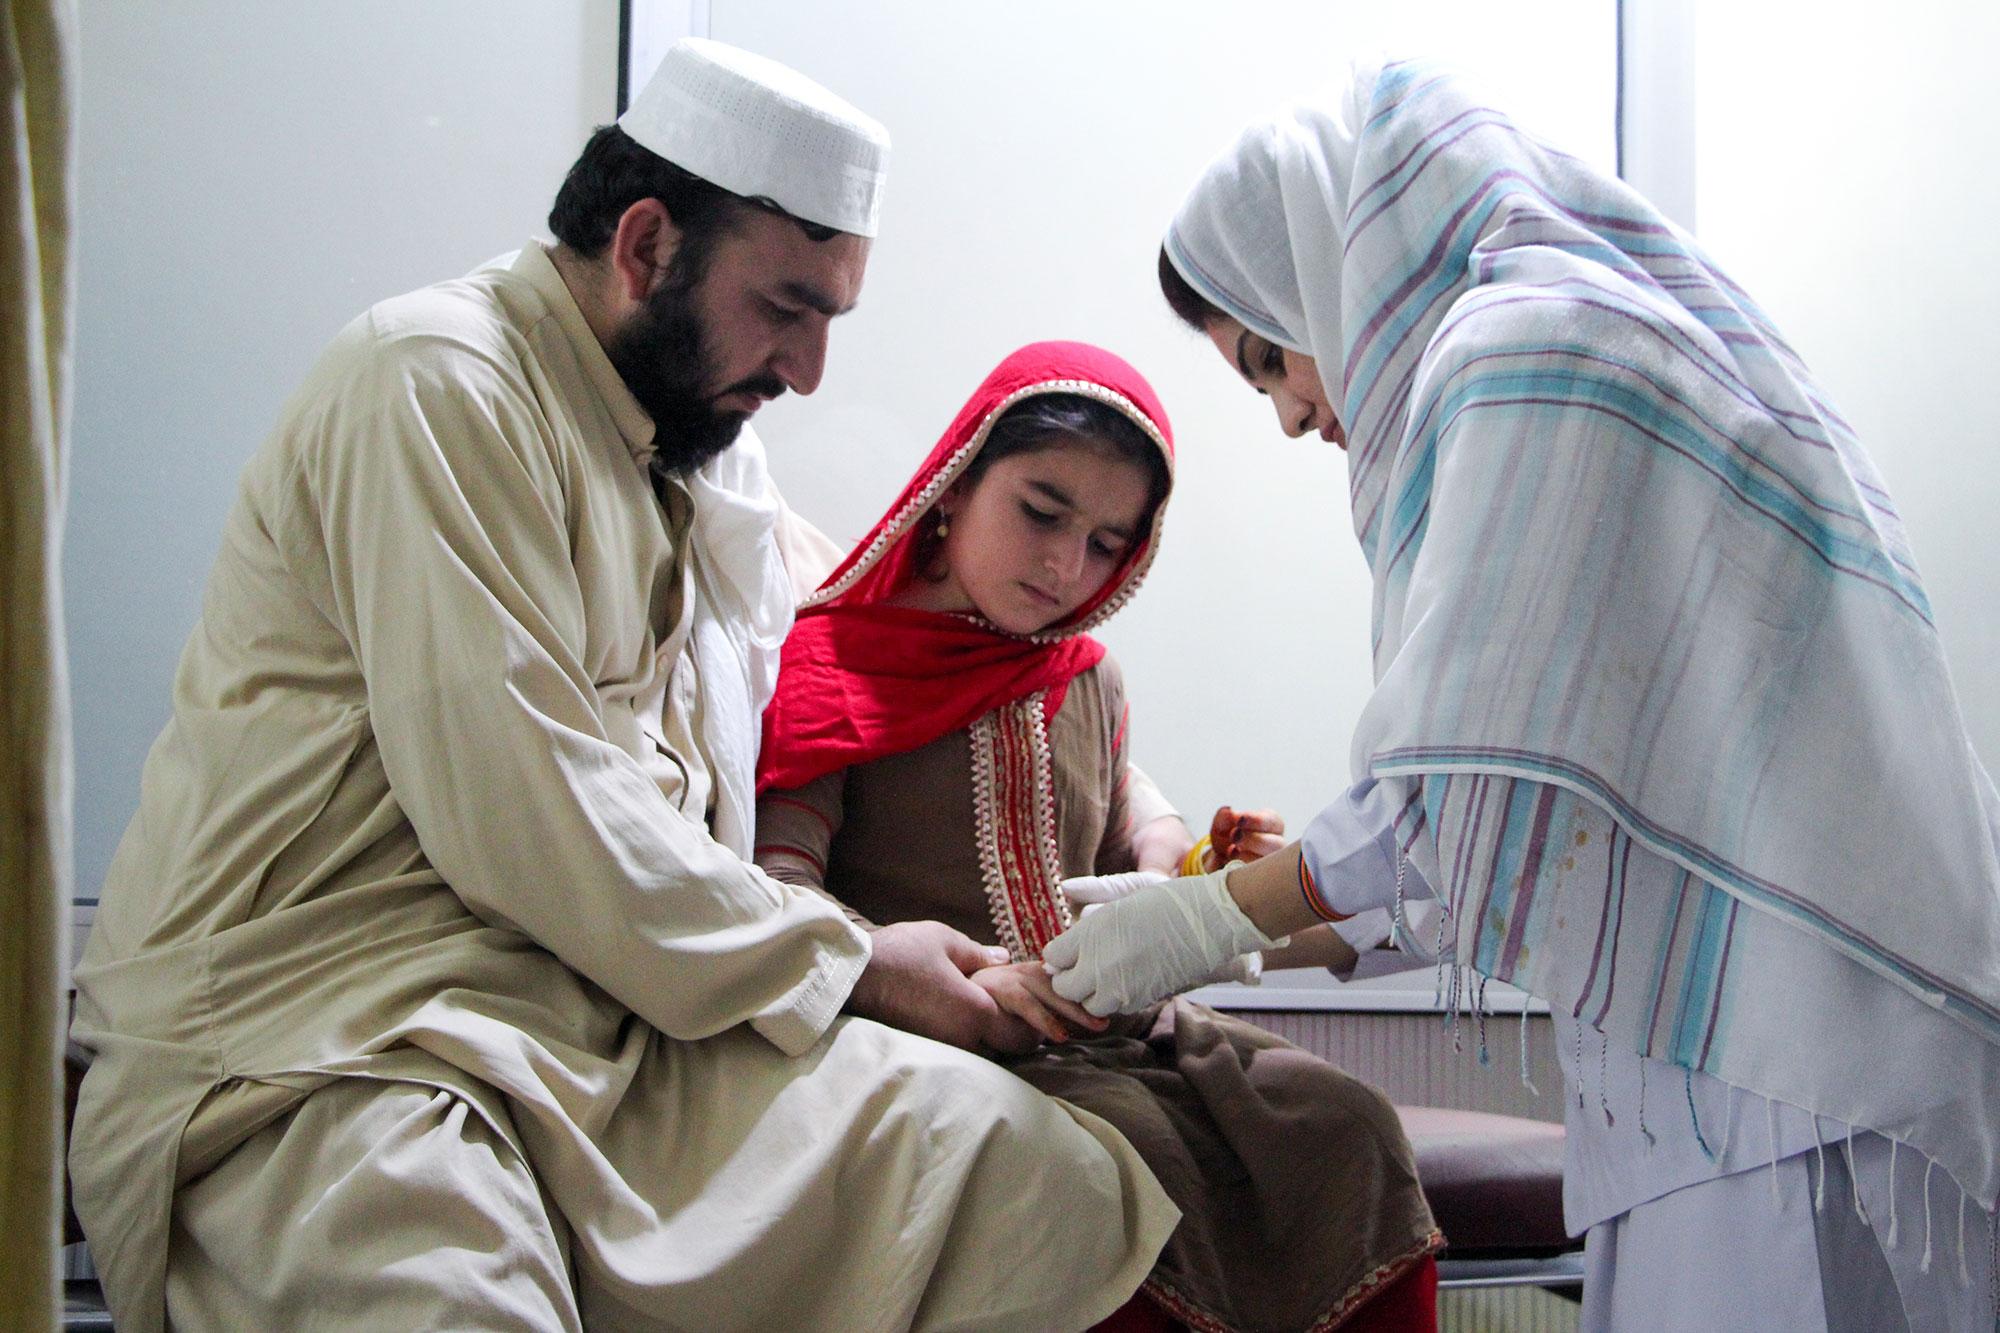 Subhan tranquiliza a su hija Afia mientras le ponen una inyección para la leishmaniasis cutánea, en el centro de tratamiento especializado de MSF en el Hospital Nasirula Khan Babar, en Peshawar. Pakistán.